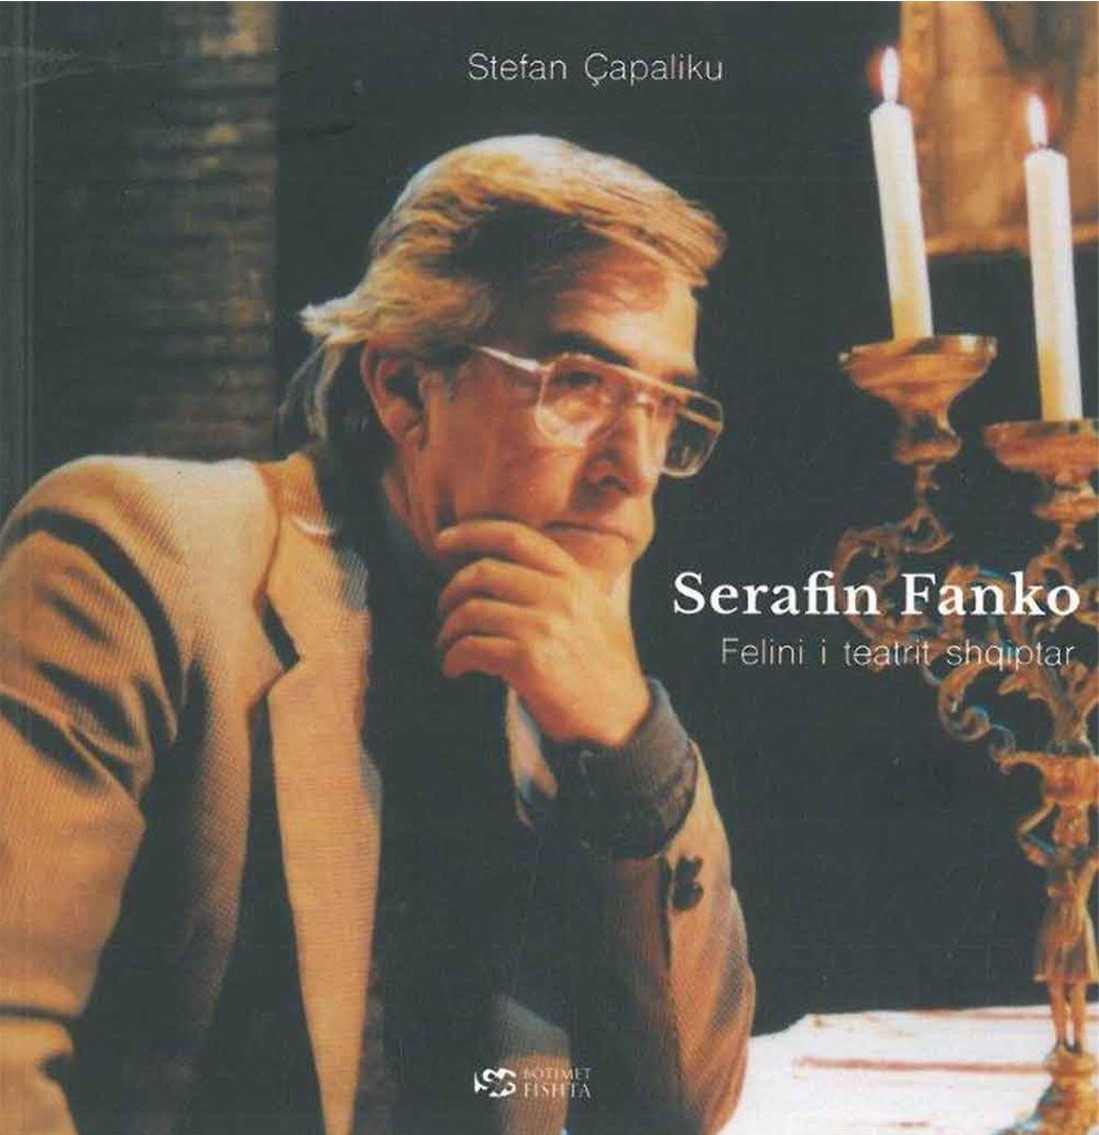 Serafin Fanko